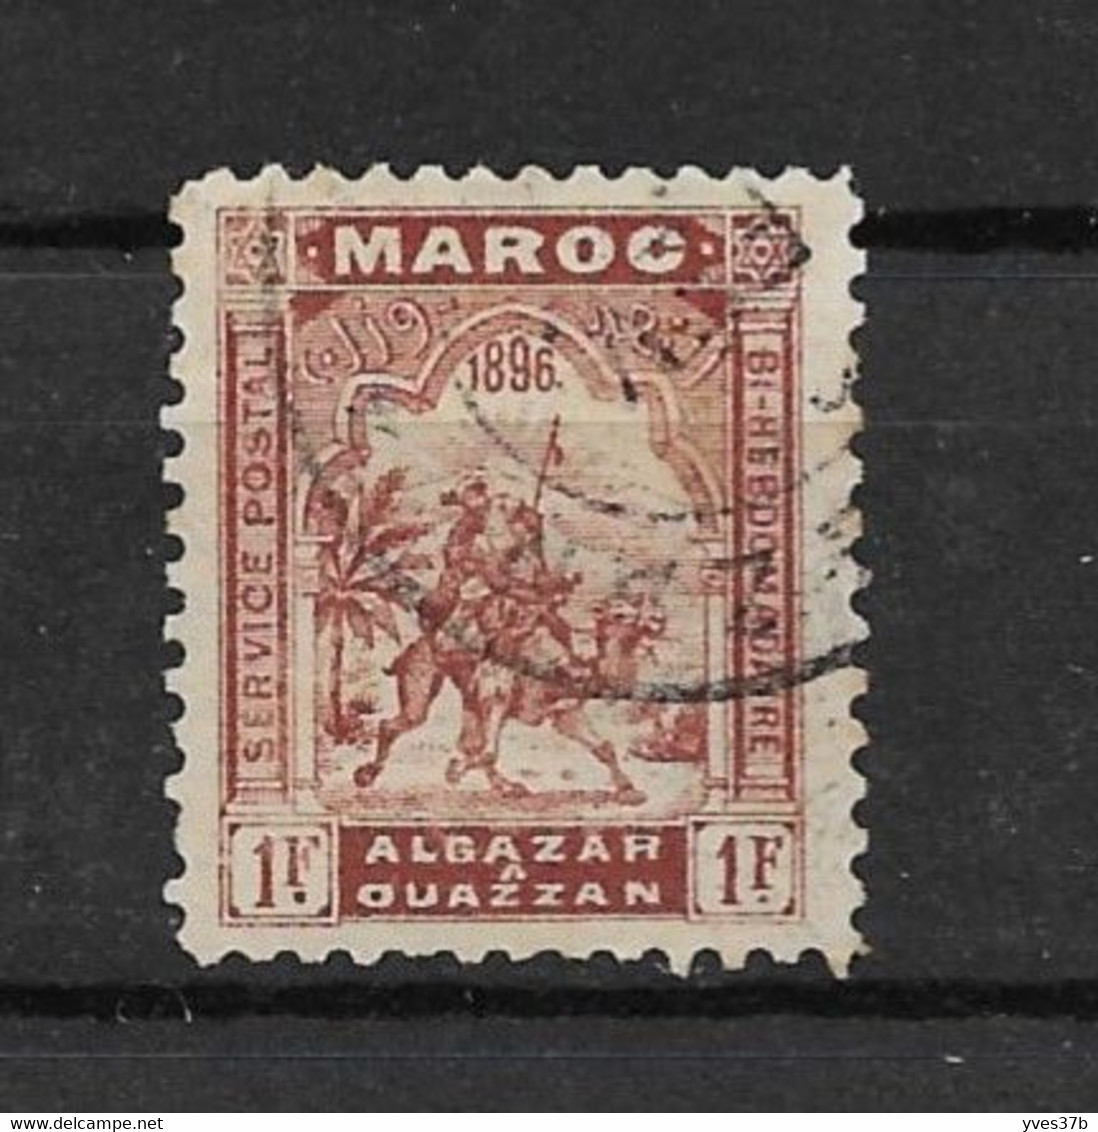 MAROC - POSTES LOCALES - Alcazar à Ouezzan N°8 Obliteré "Alcazar" - Très Bon Centrage - Très Frais - TTB - - Used Stamps